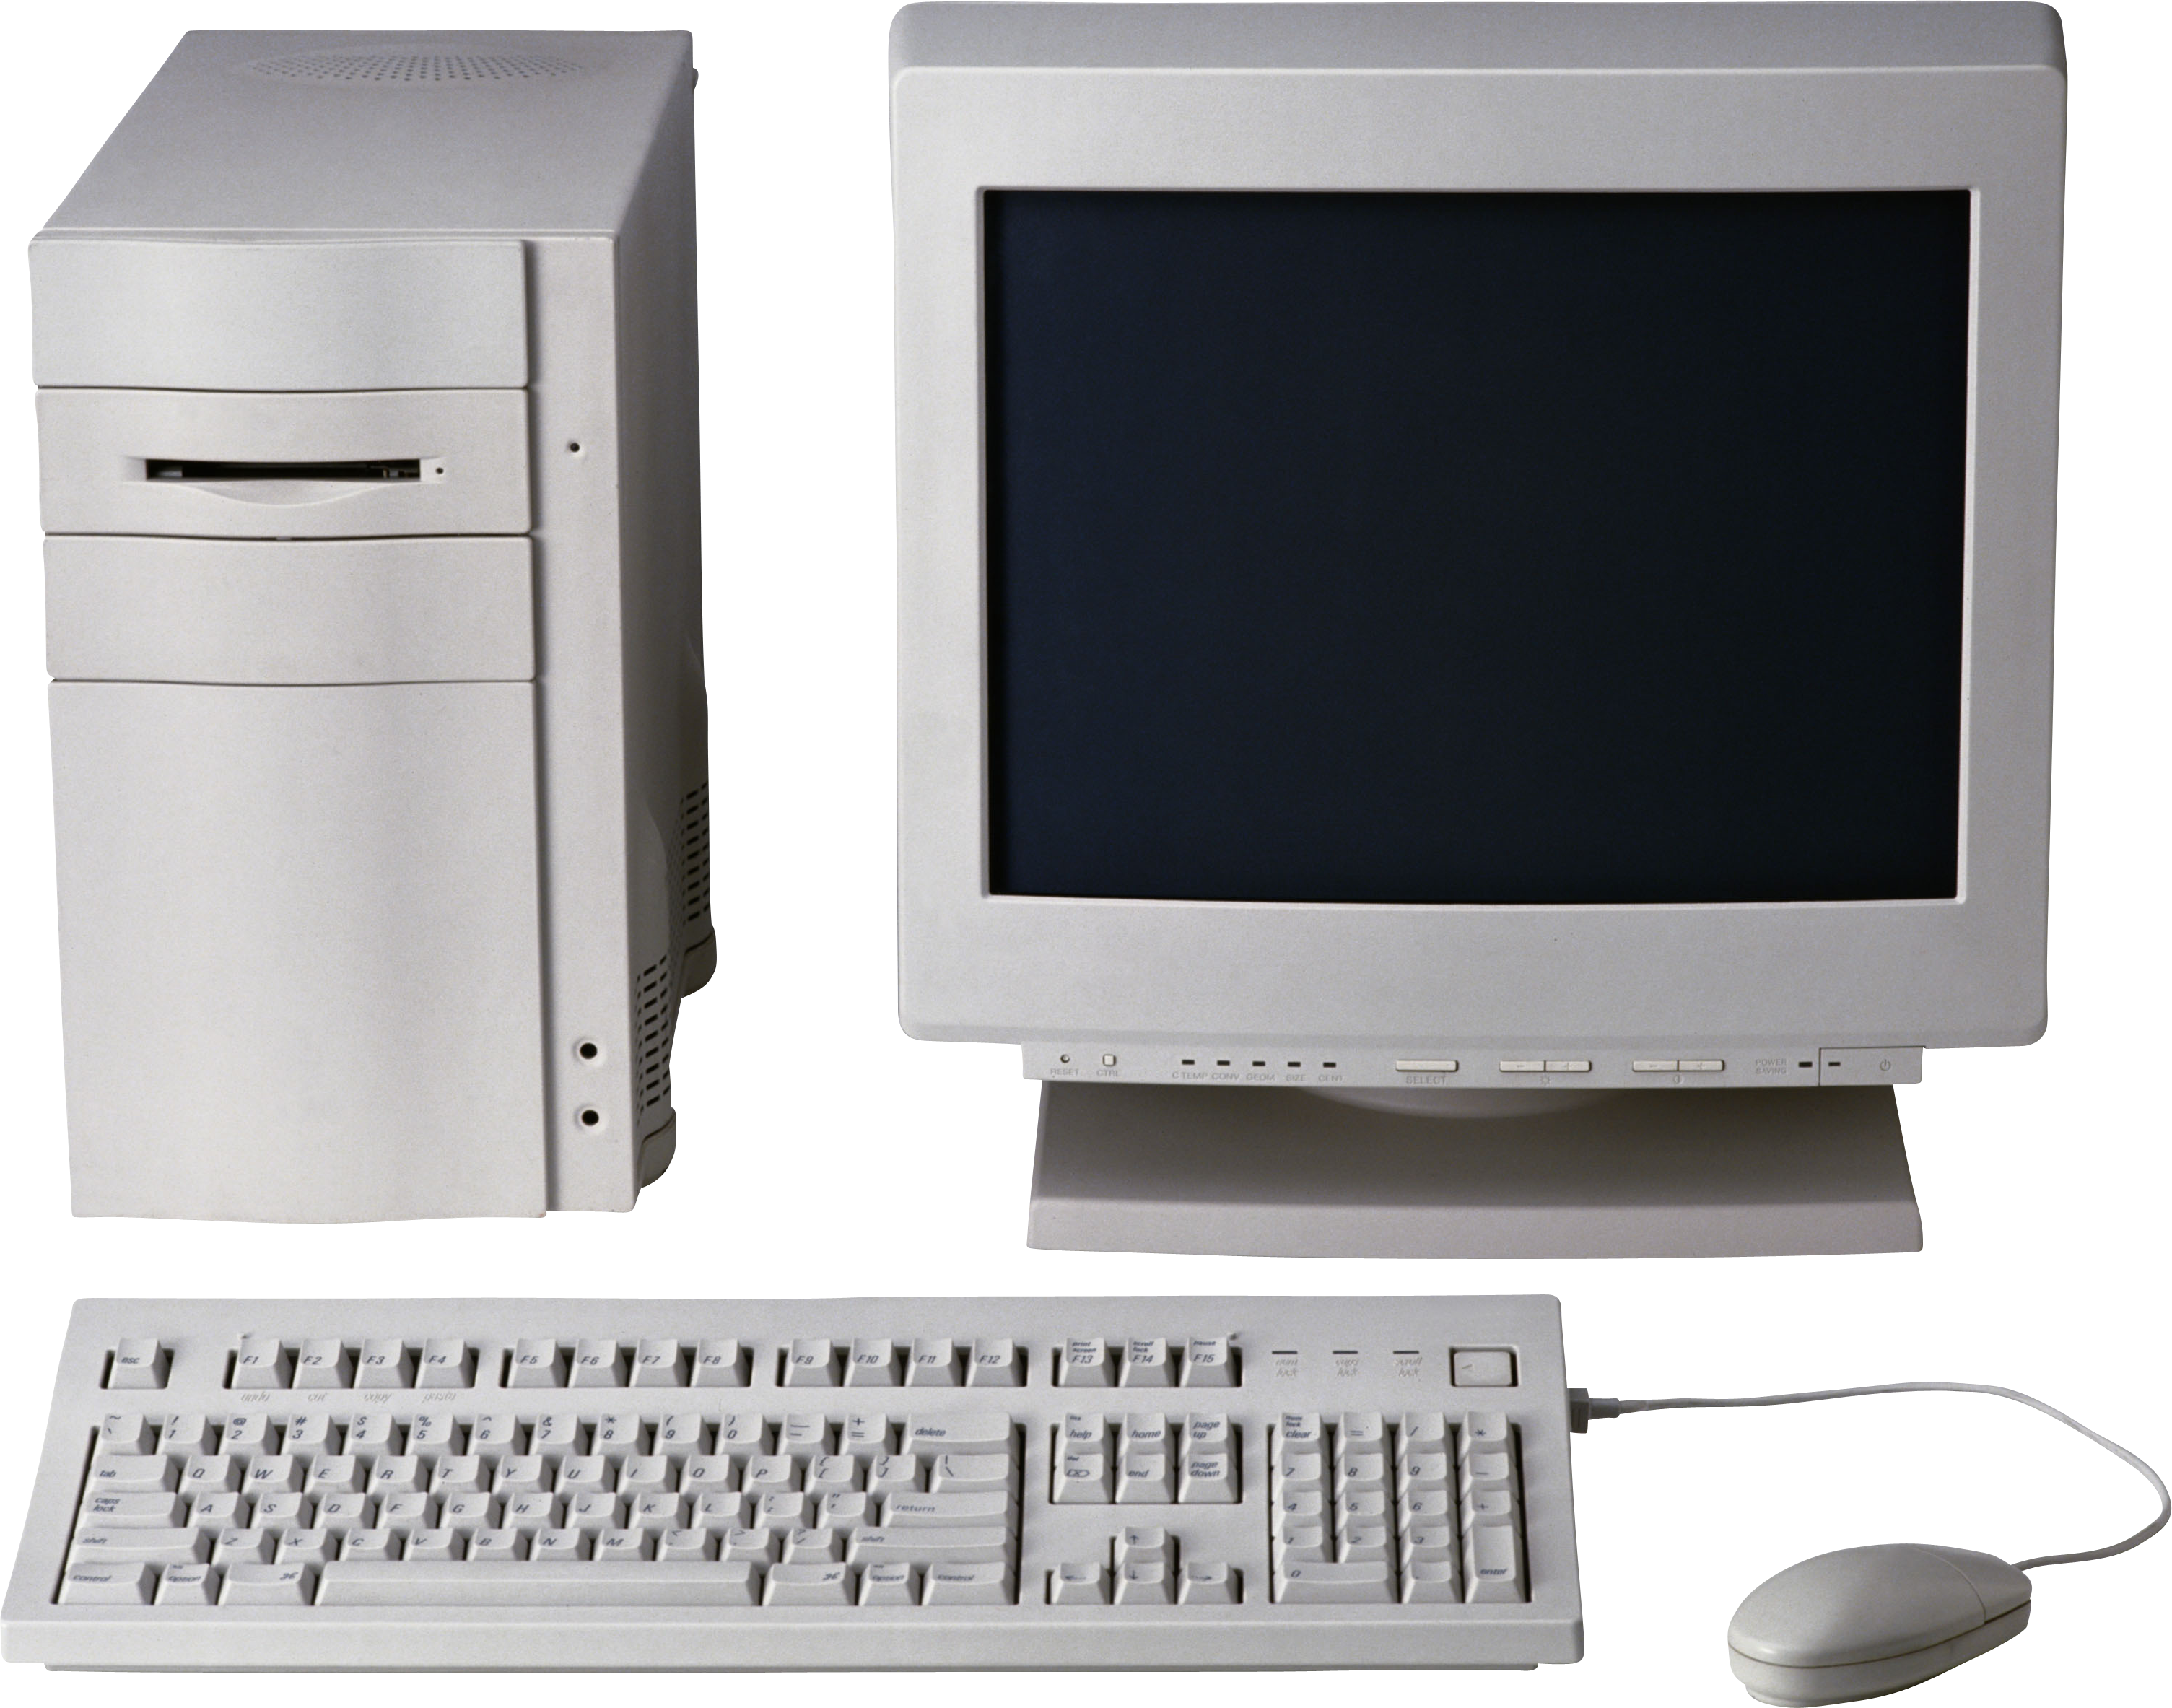 Computer desktop PC PNG images 